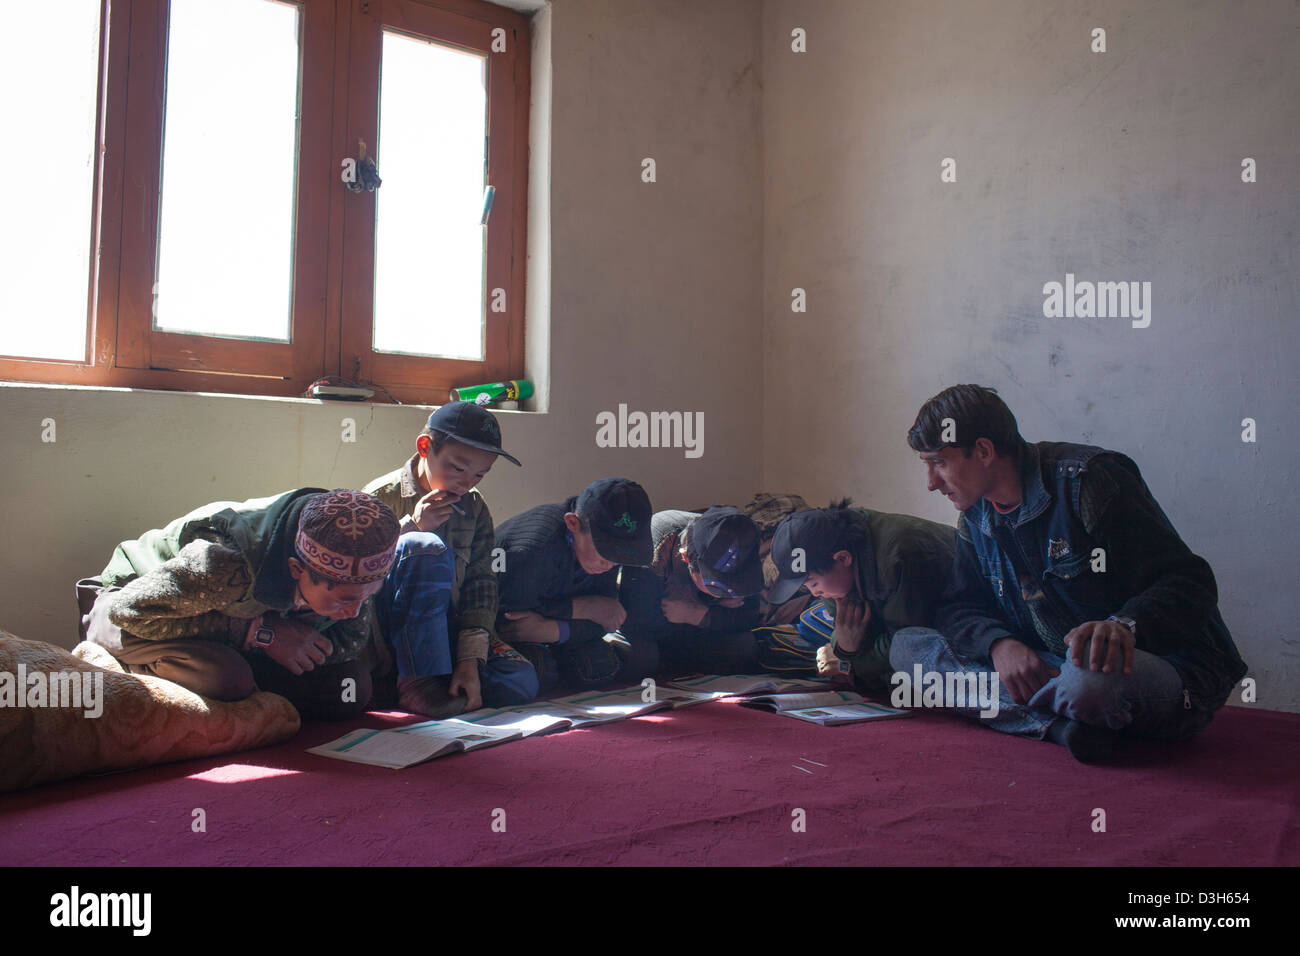 Kirgisische Studenten studieren an einer Zentralasien Inst finanzierten Schule in Bozai Gumbaz in den Wakhan, Afghanistan. Stockfoto